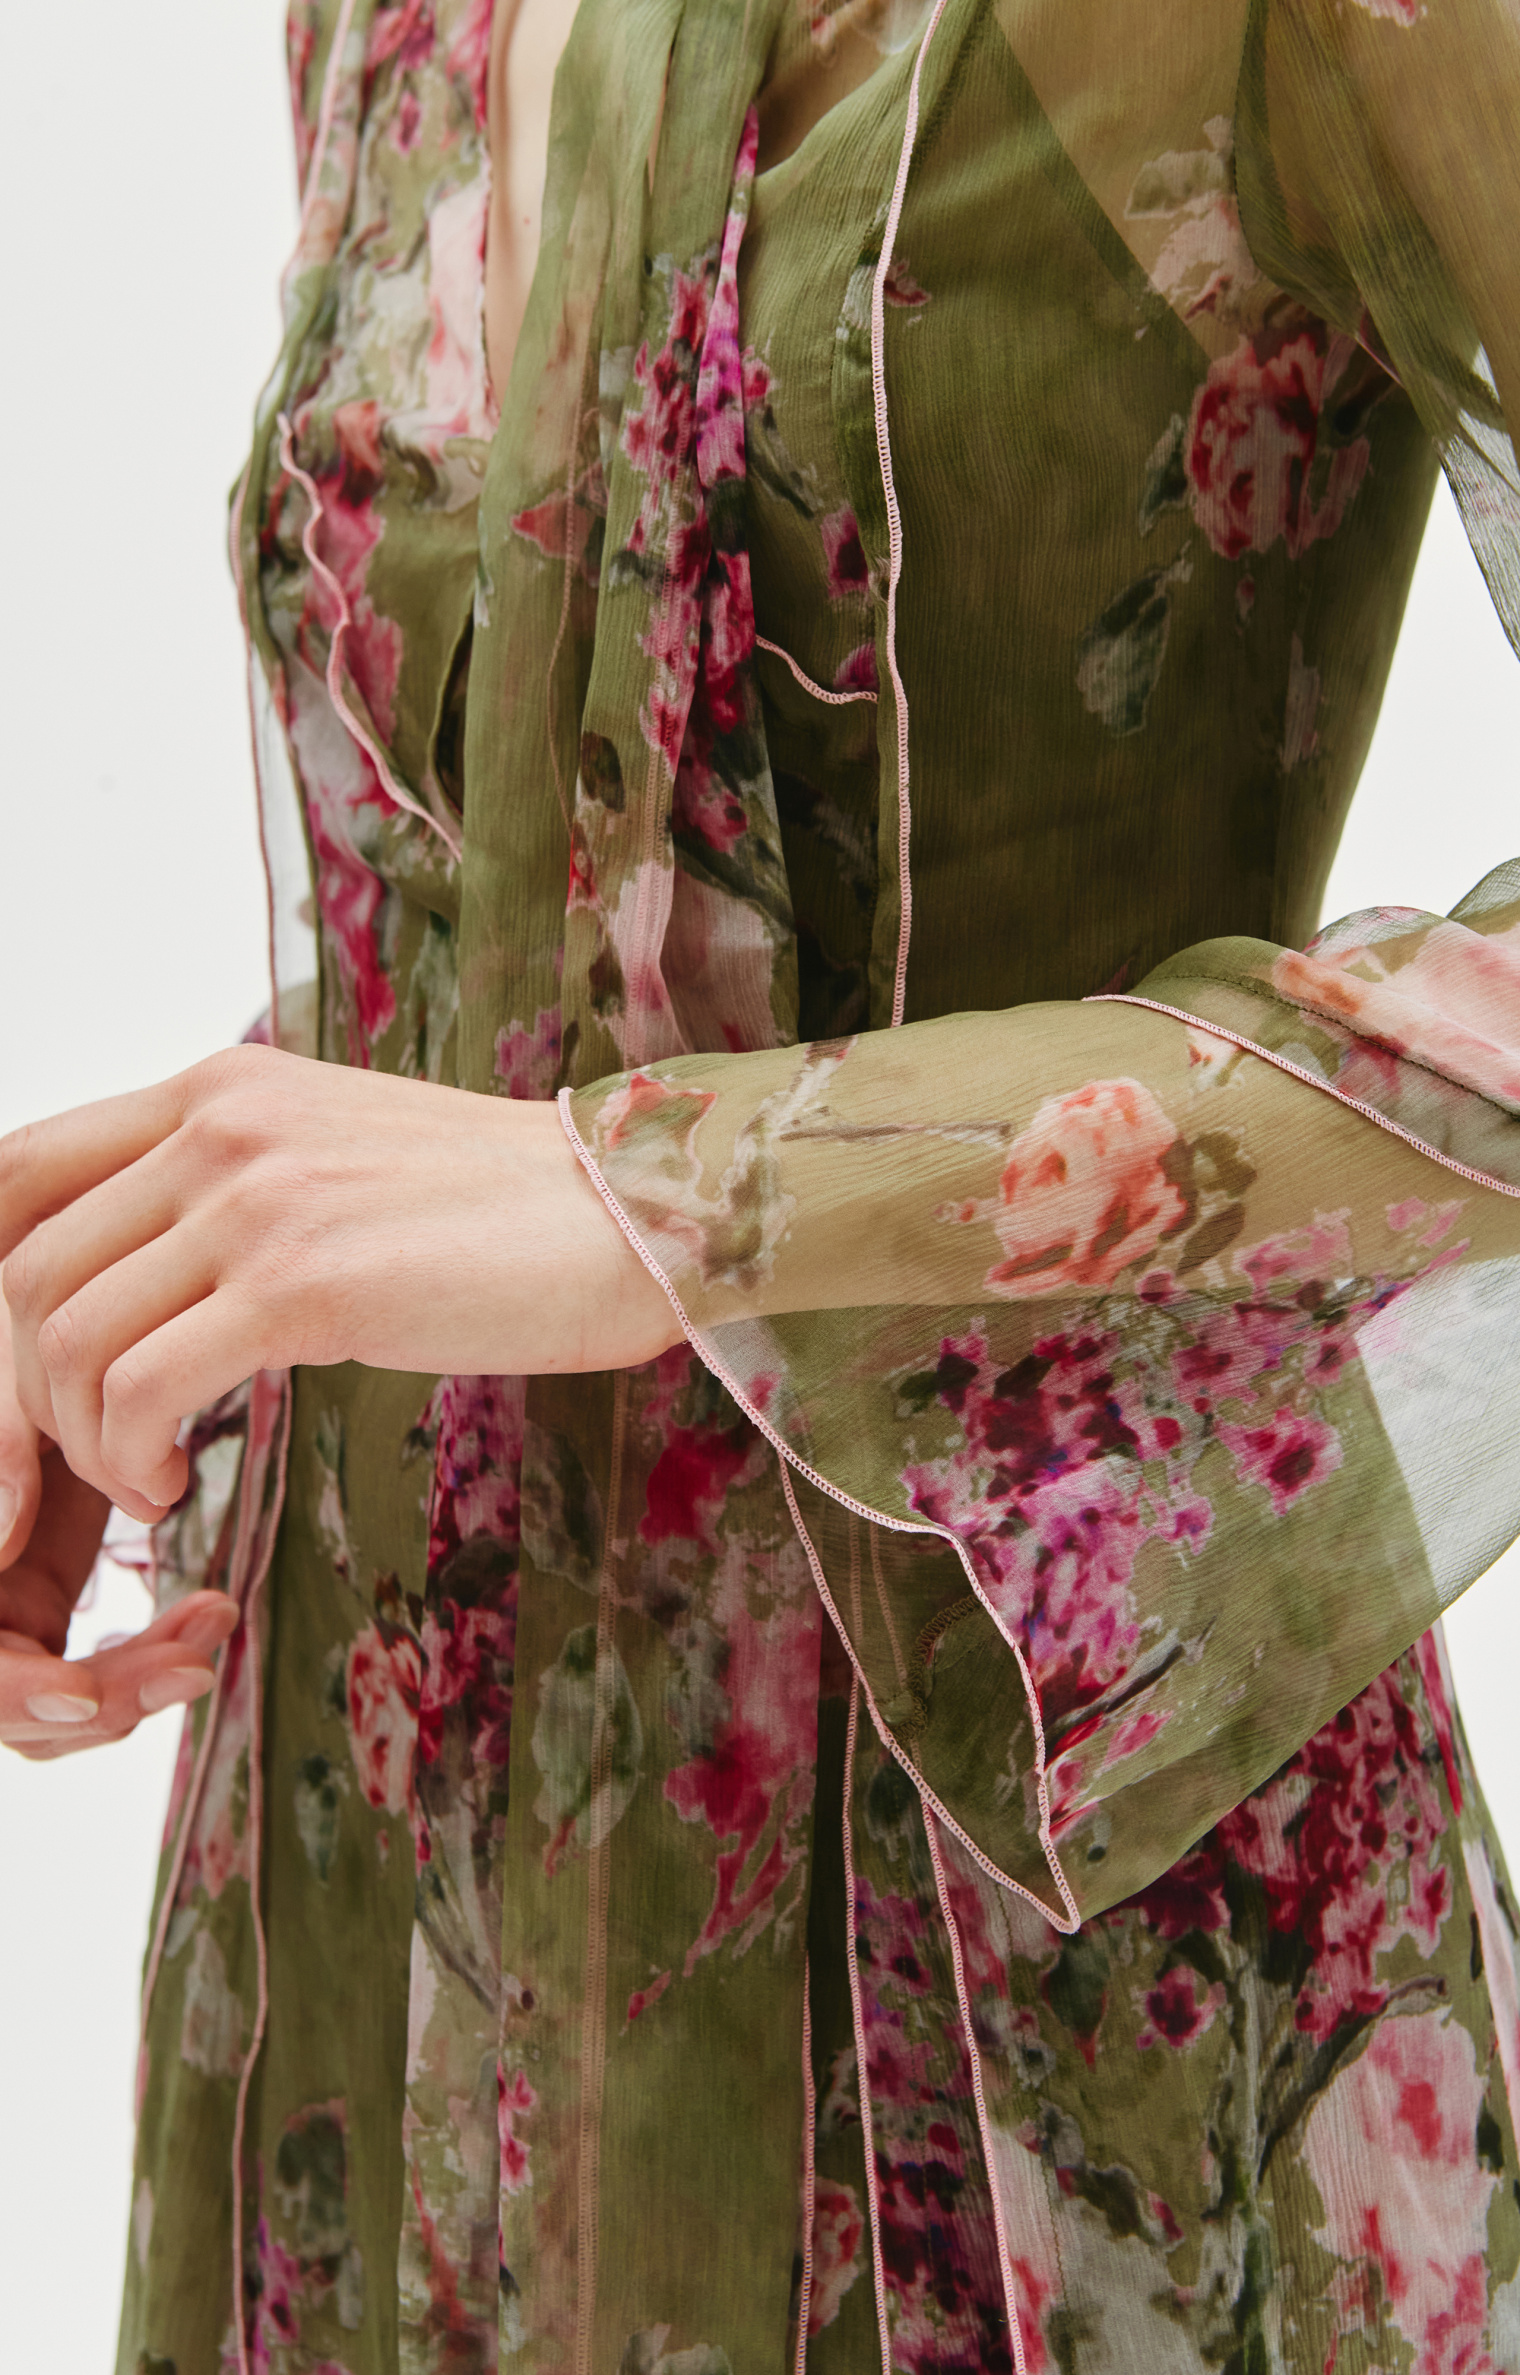 Blumarine Floral Print Midi Dress